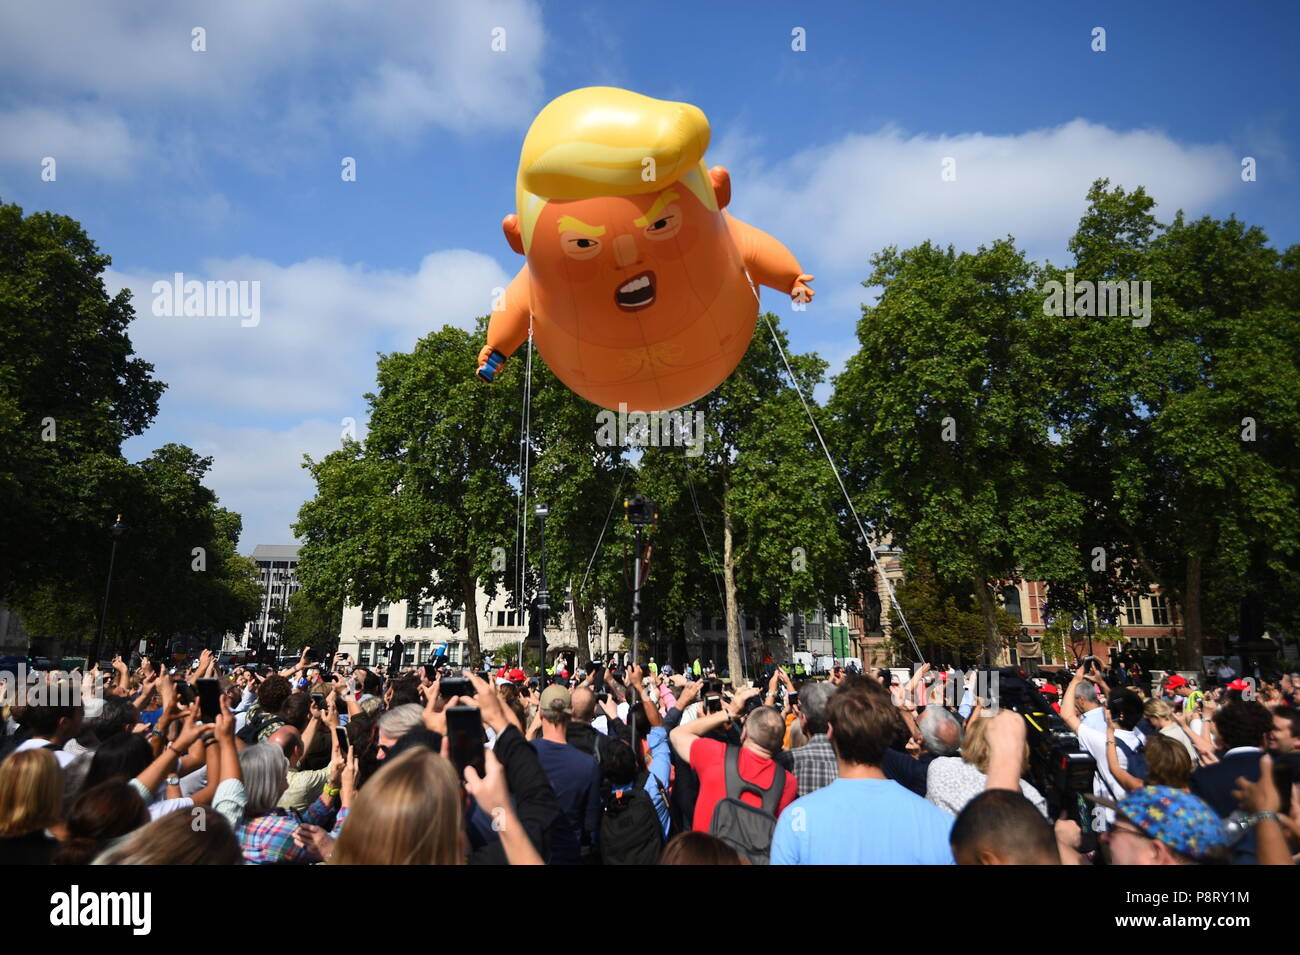 Un "ballon" d'Atout bébé se lève après avoir été gonflé dans le quartier à la place du Parlement, dans le cadre des manifestations contre la visite du président américain Donald Trump au Royaume-Uni. Banque D'Images